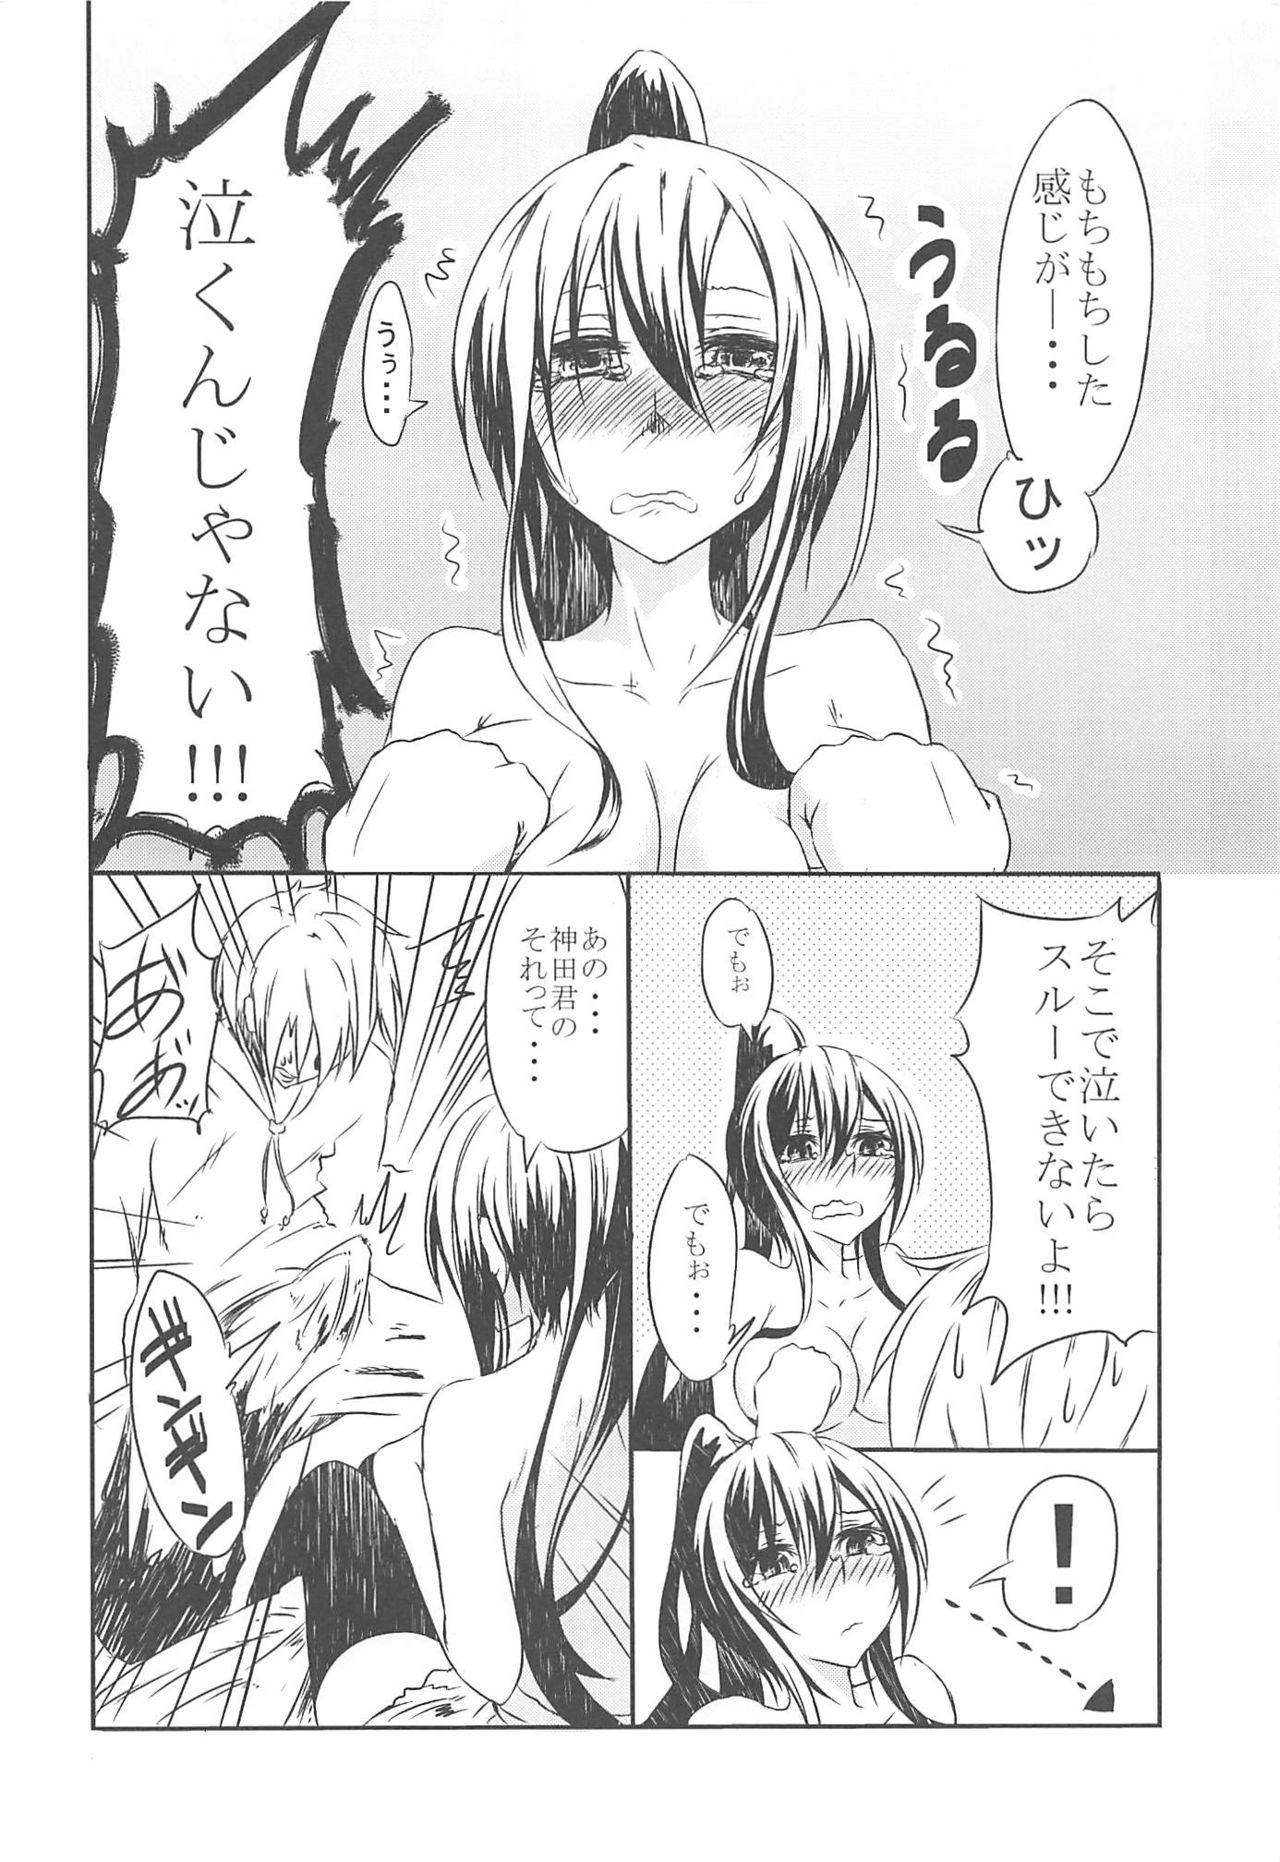 Pussy To Mouth Sakurasou no Ecchi na Kanojo - Sakurasou no pet na kanojo Strip - Page 5